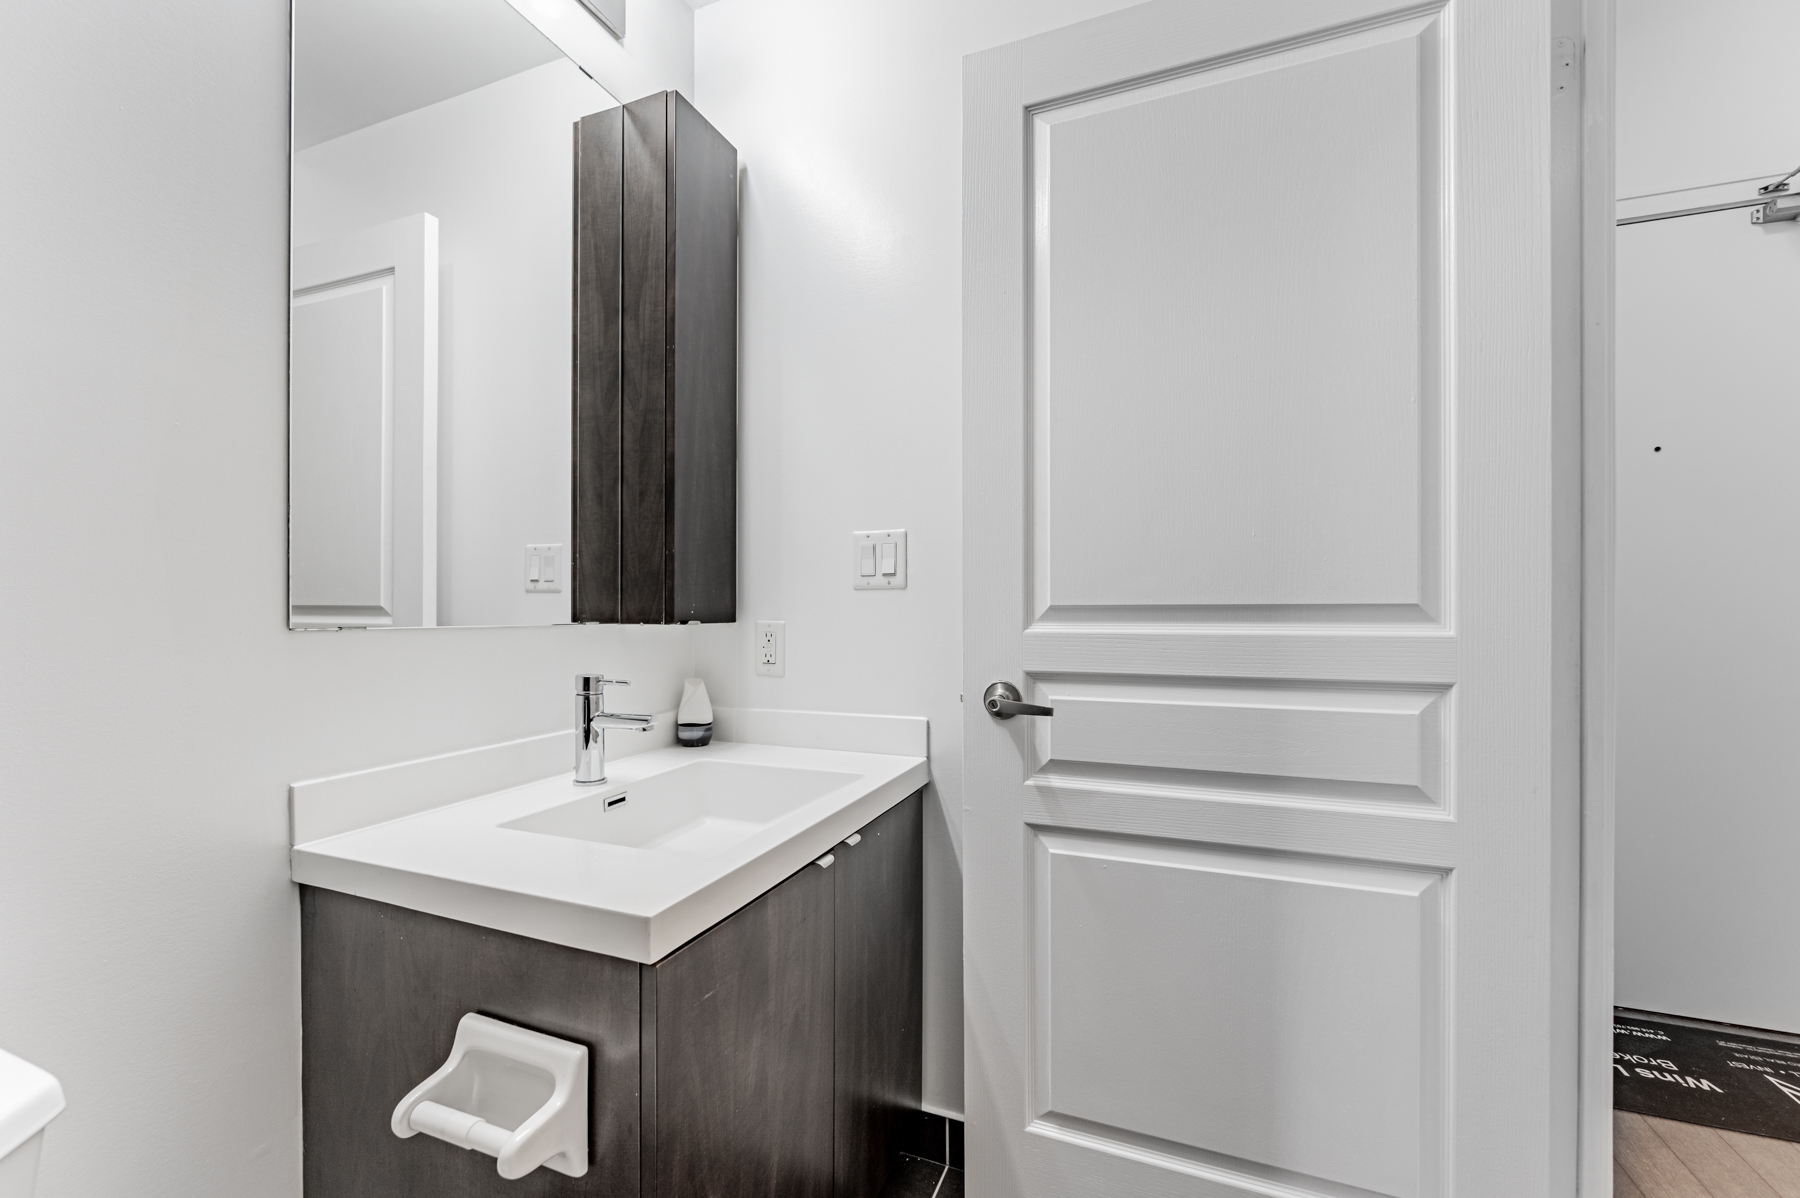 Condo bathroom vanity, sink and medicine cabinet.